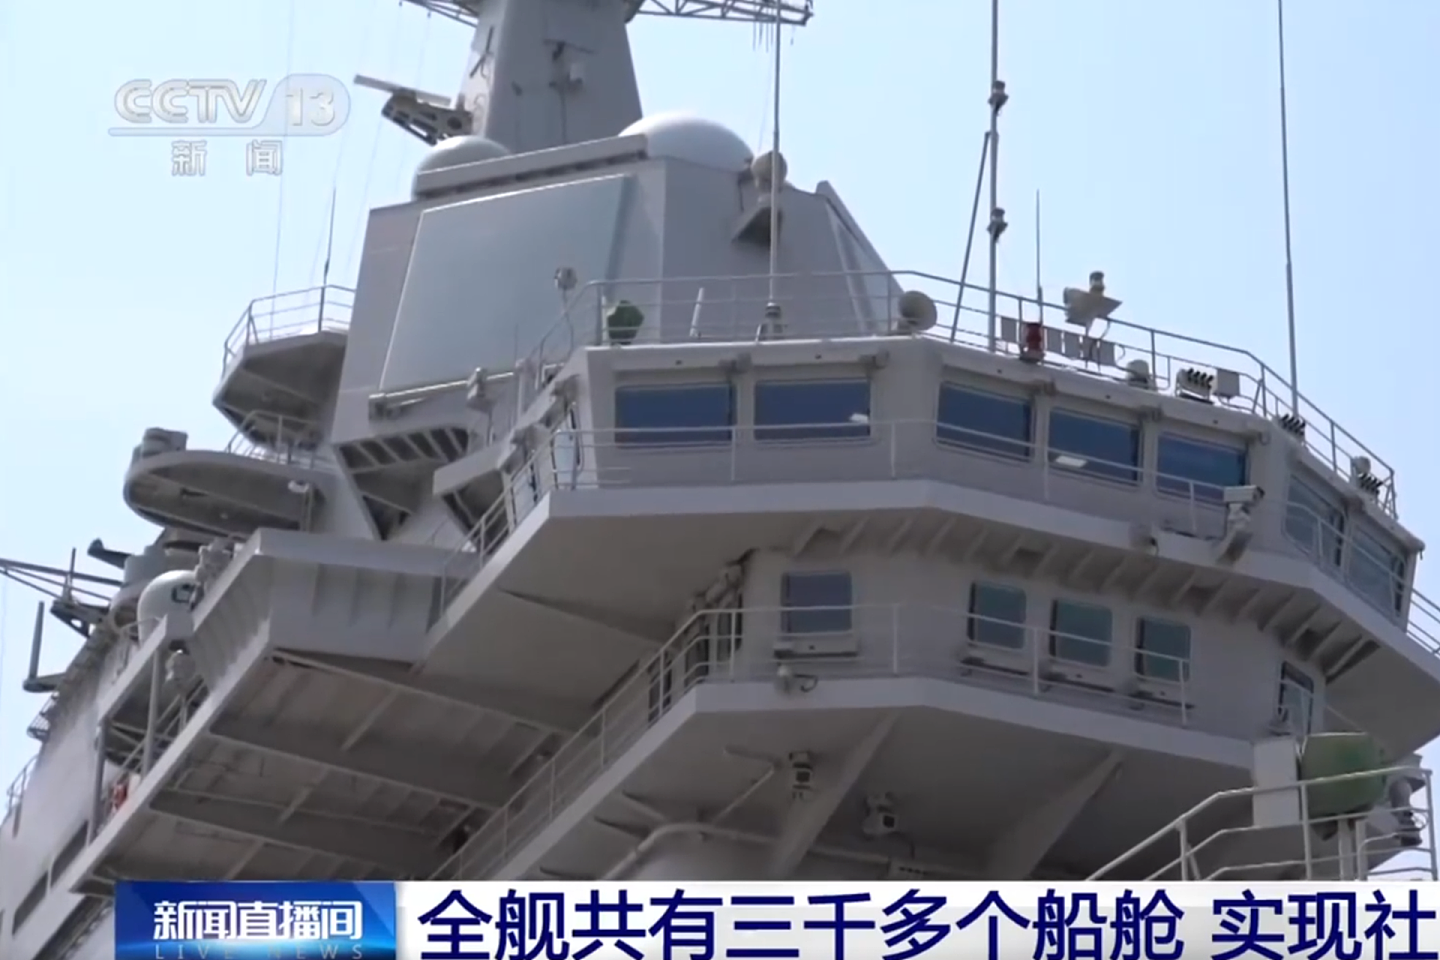 中国官方公开介绍山东舰航母。山东舰有二十多层楼那么高。（中国央视视频截图）